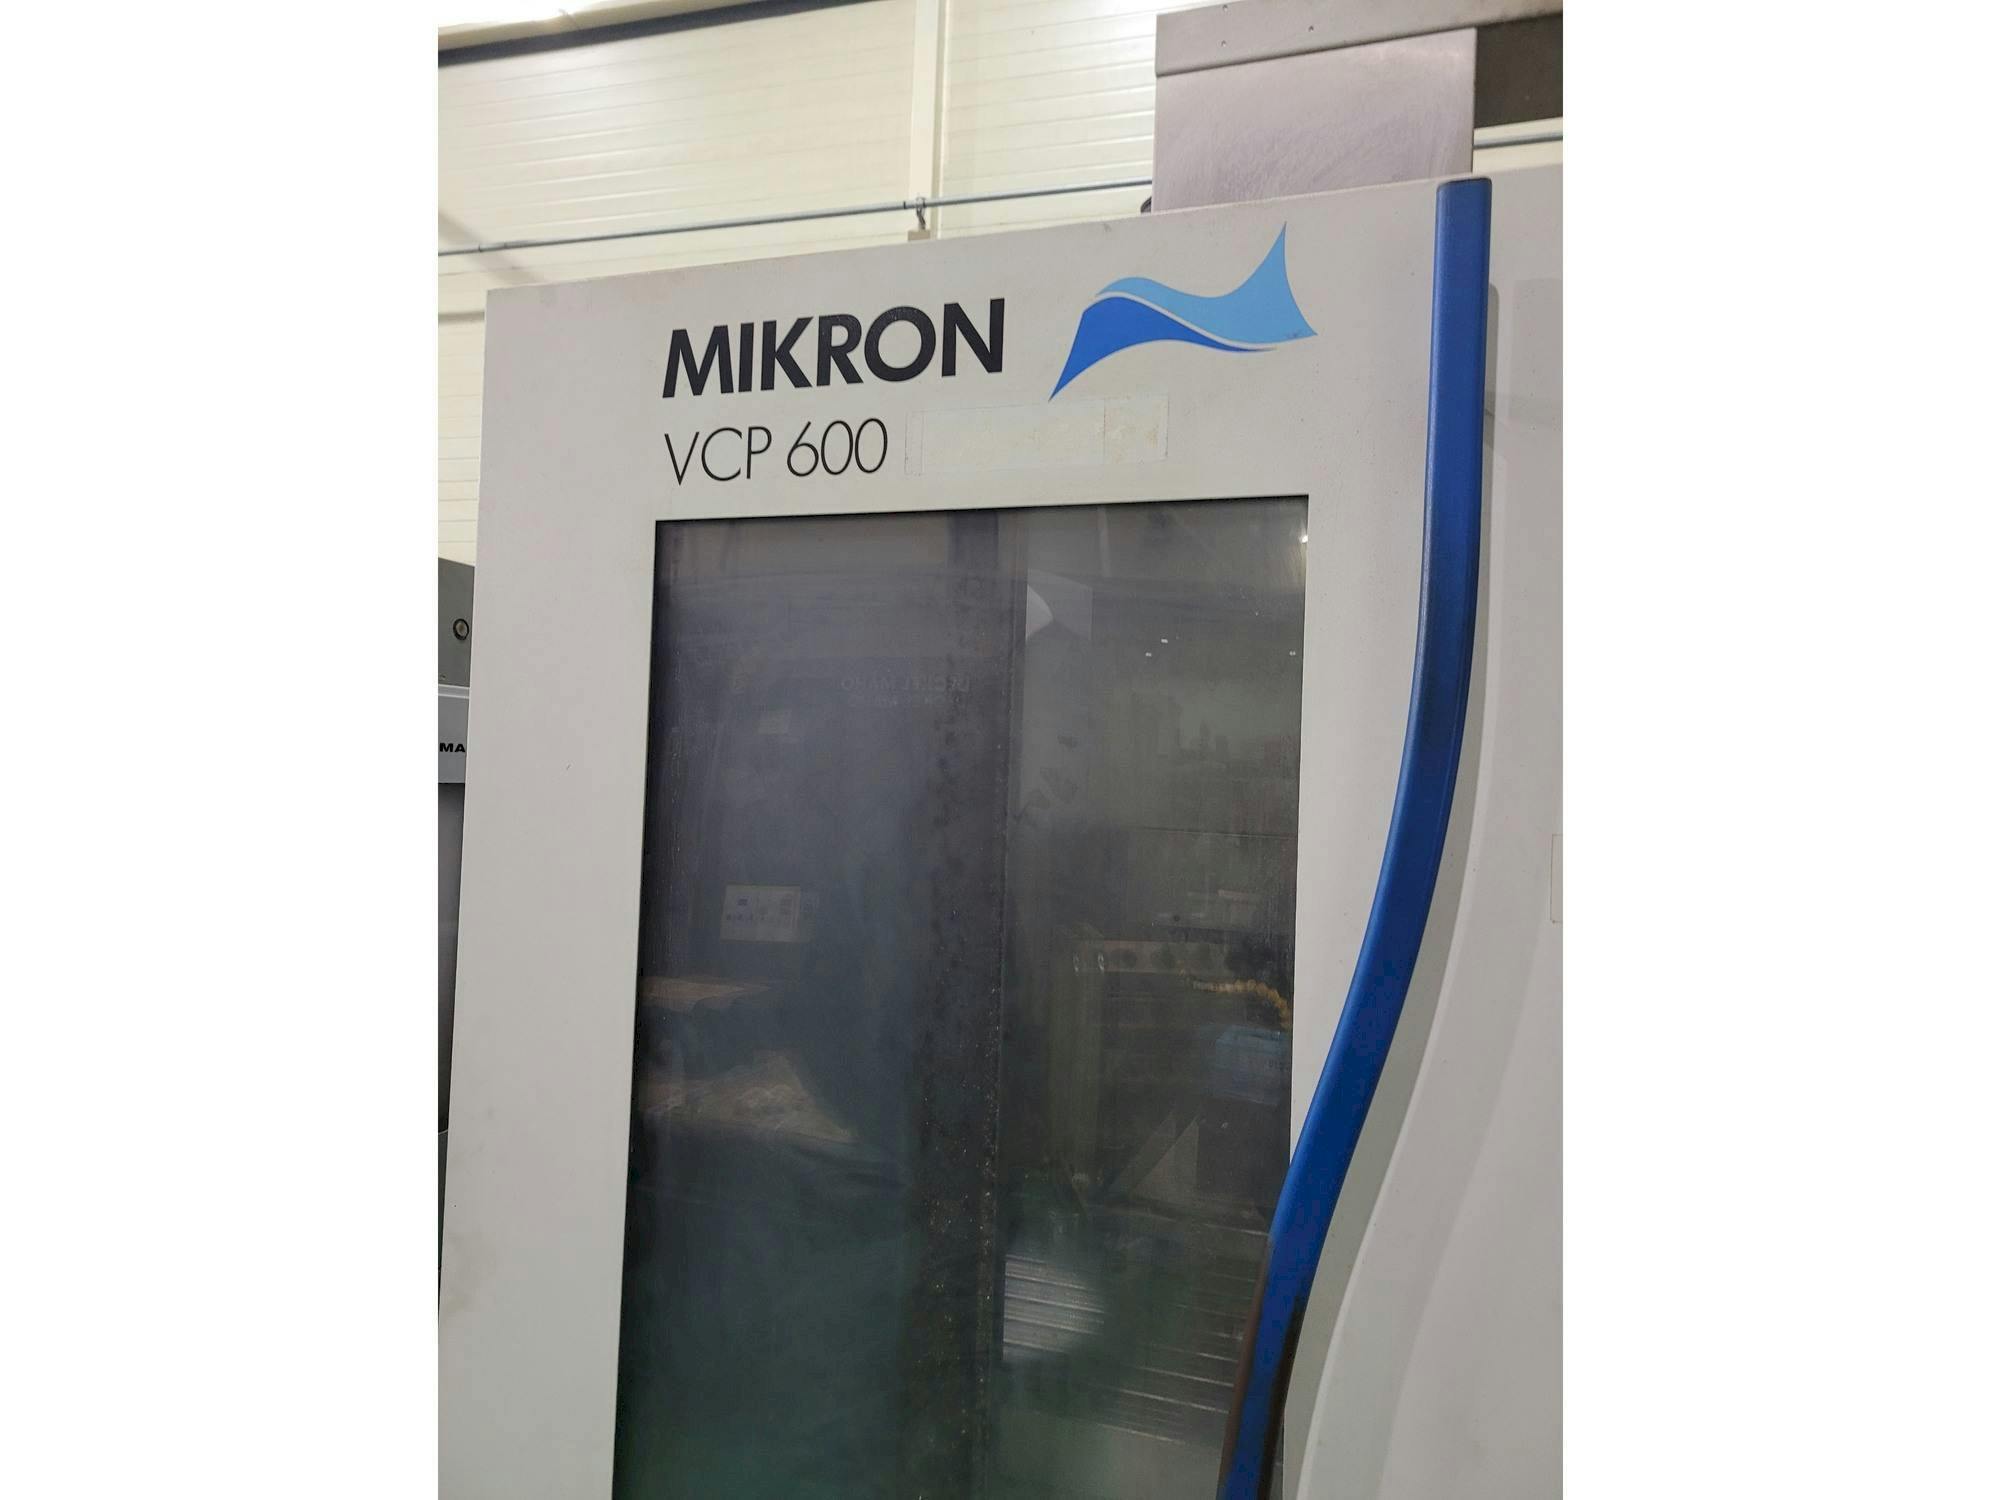 Frontansicht der MIKRON VCP 600  Maschine